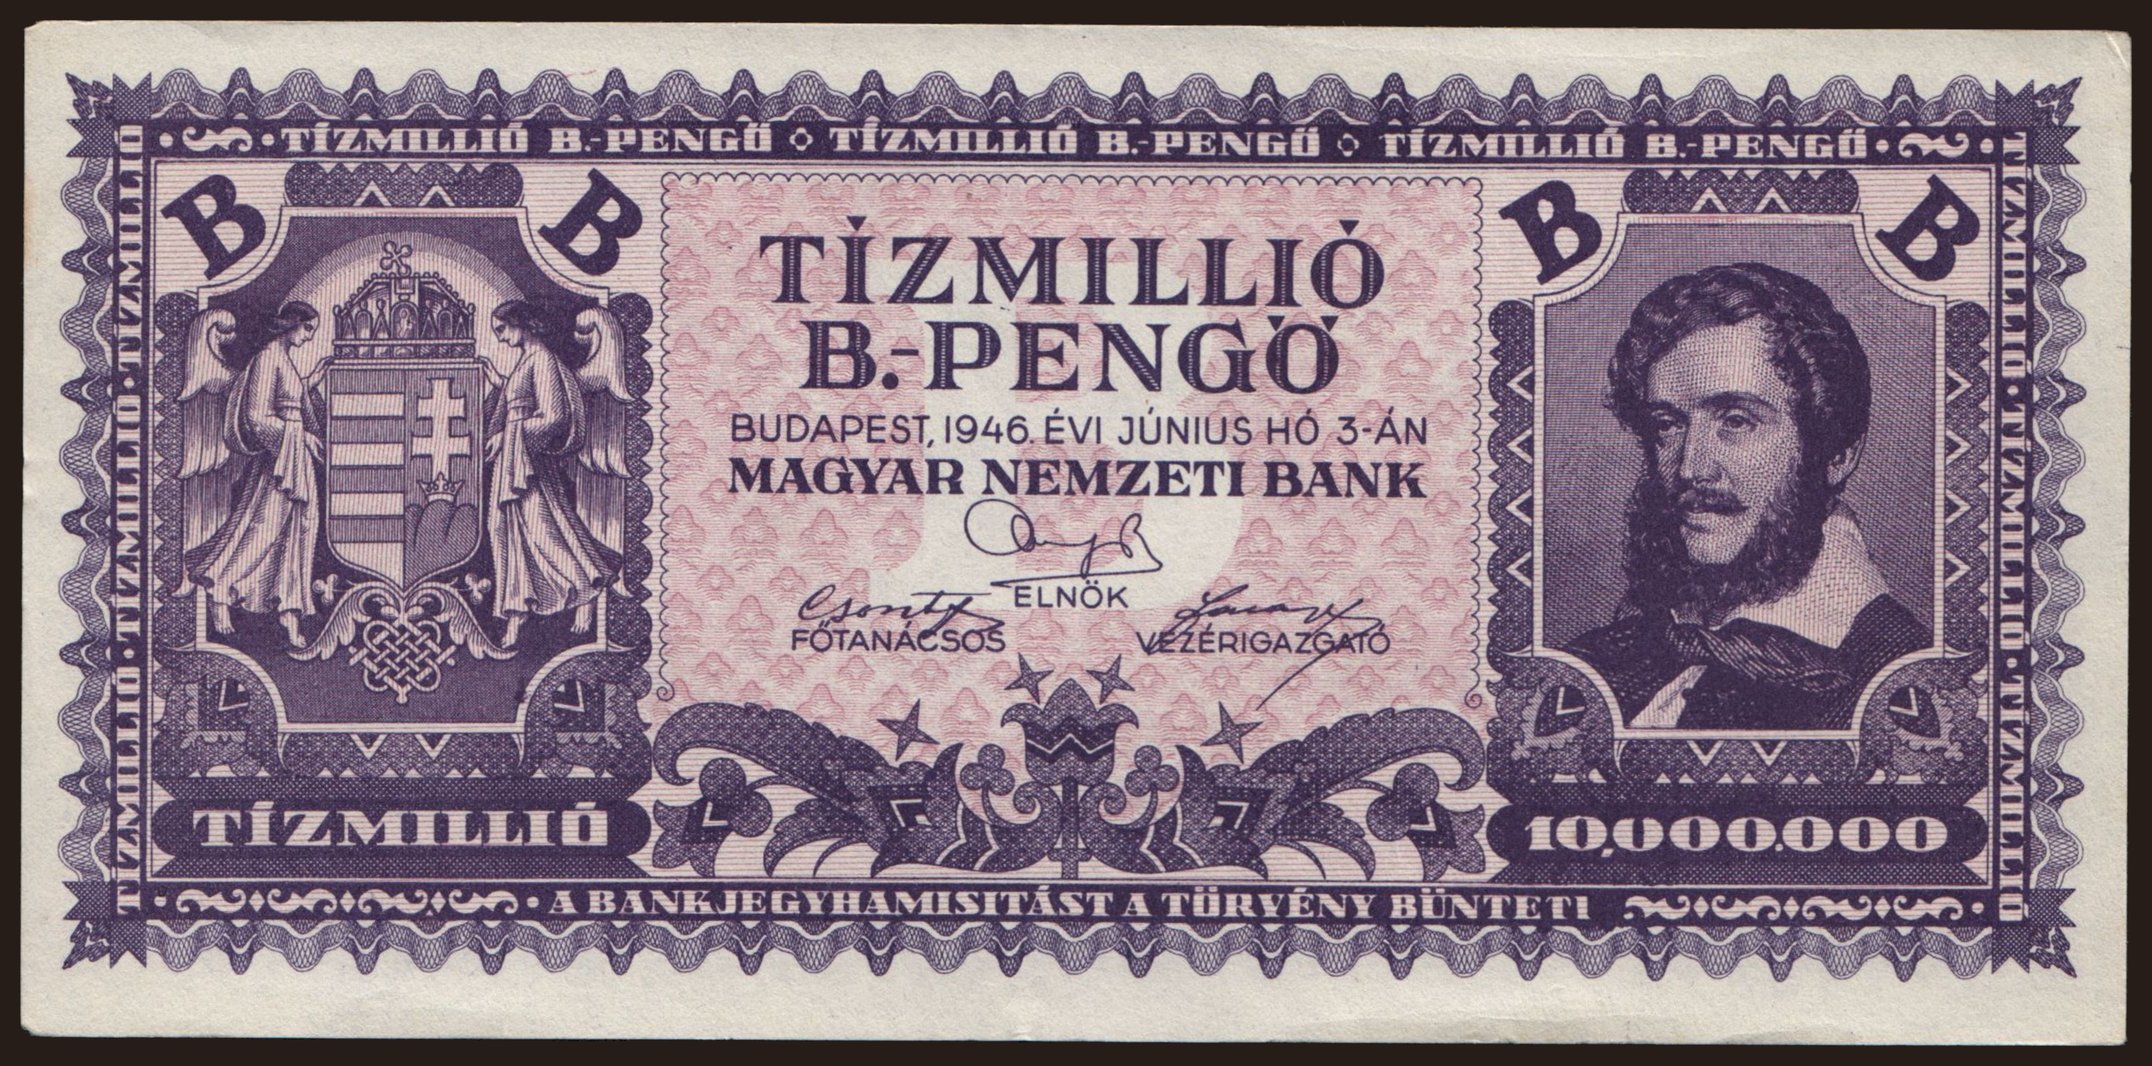 10.000.000 B-pengő, 1946